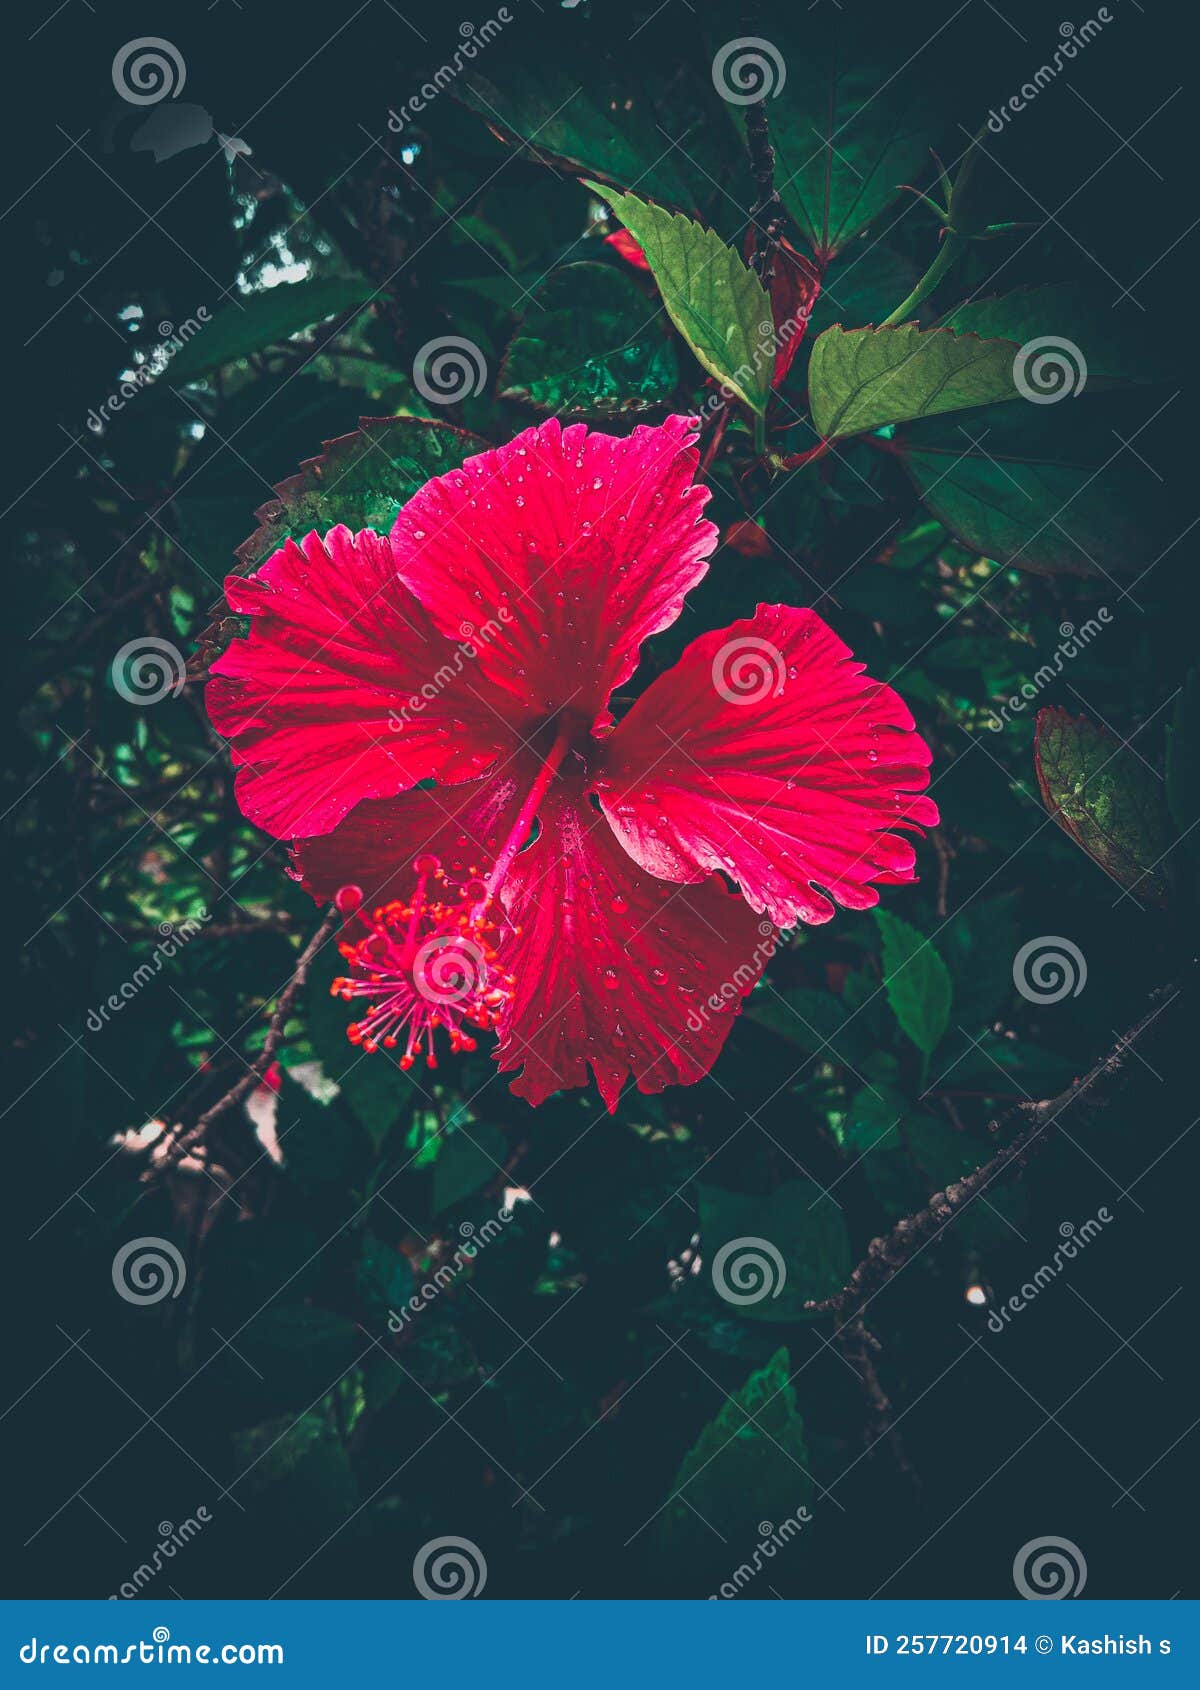 hibiscus flower scientific name hibiscus-rosa-sinesis